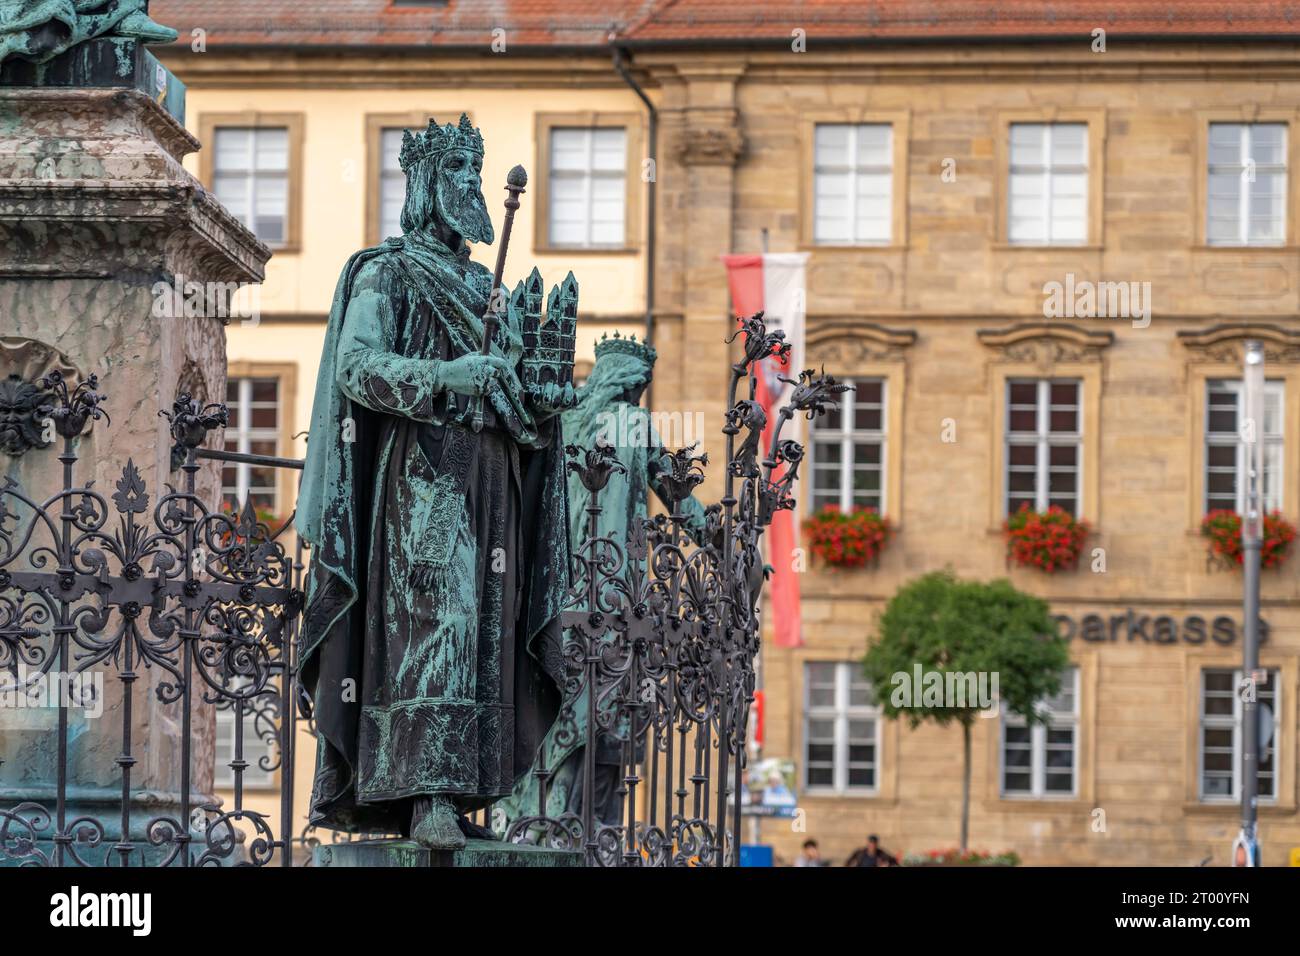 Statuen am Maximiliansbrunnen auf dem Maxplatz oder Maximiliansplatz, Altstadt von Bamberg, Oberfranken, Bayern, Deutschland, Europa | Statuen der Stockfoto